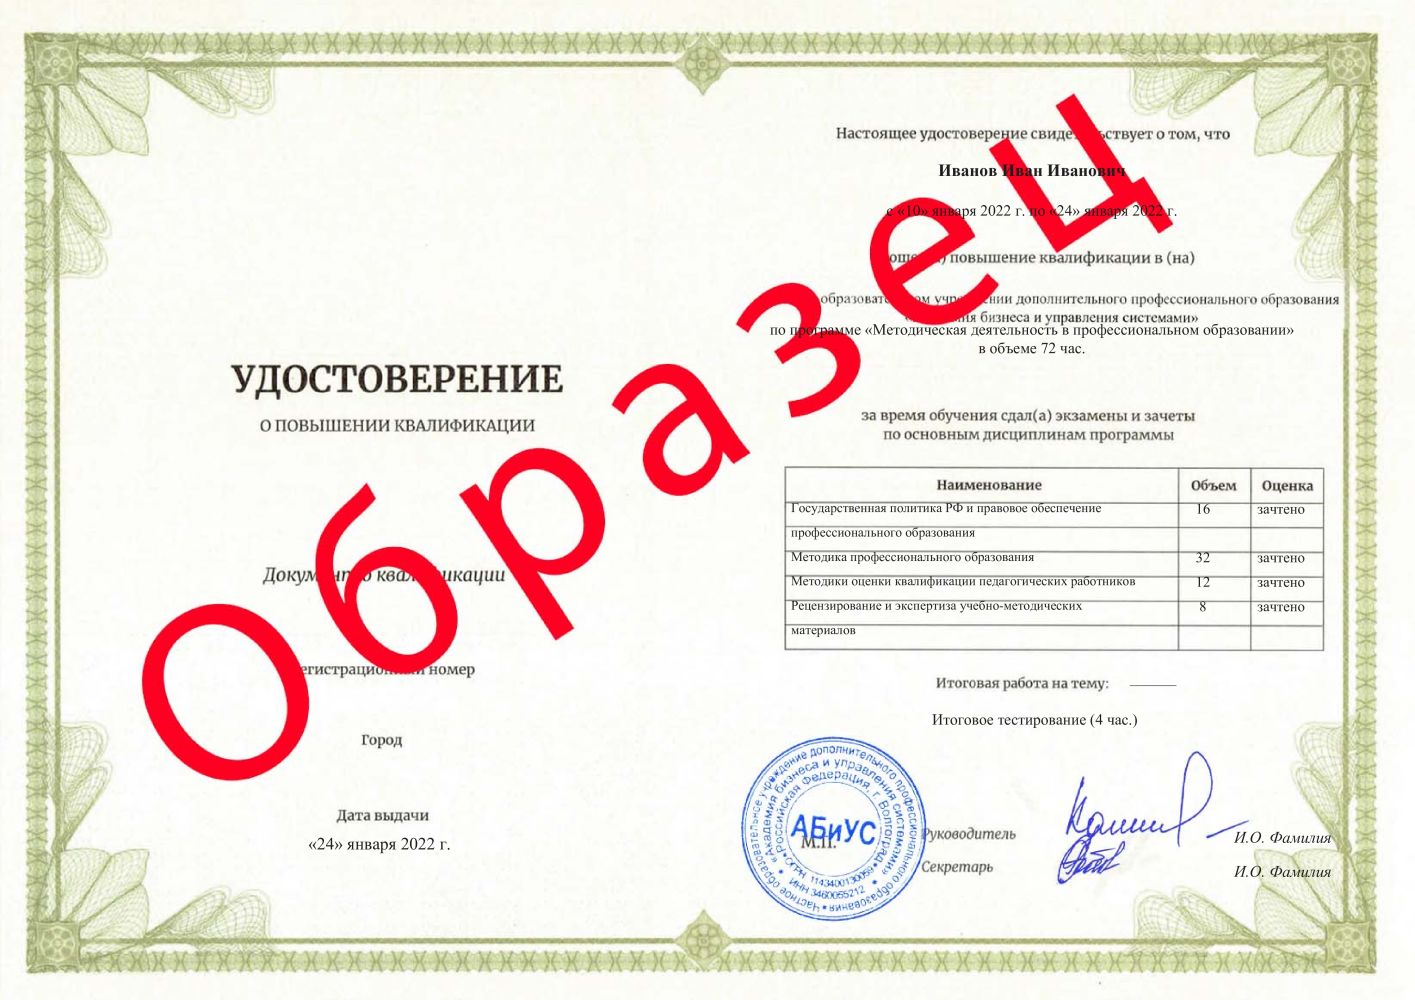 Удостоверение Методическая деятельность в профессиональном образовании 72 часа 2800 руб.